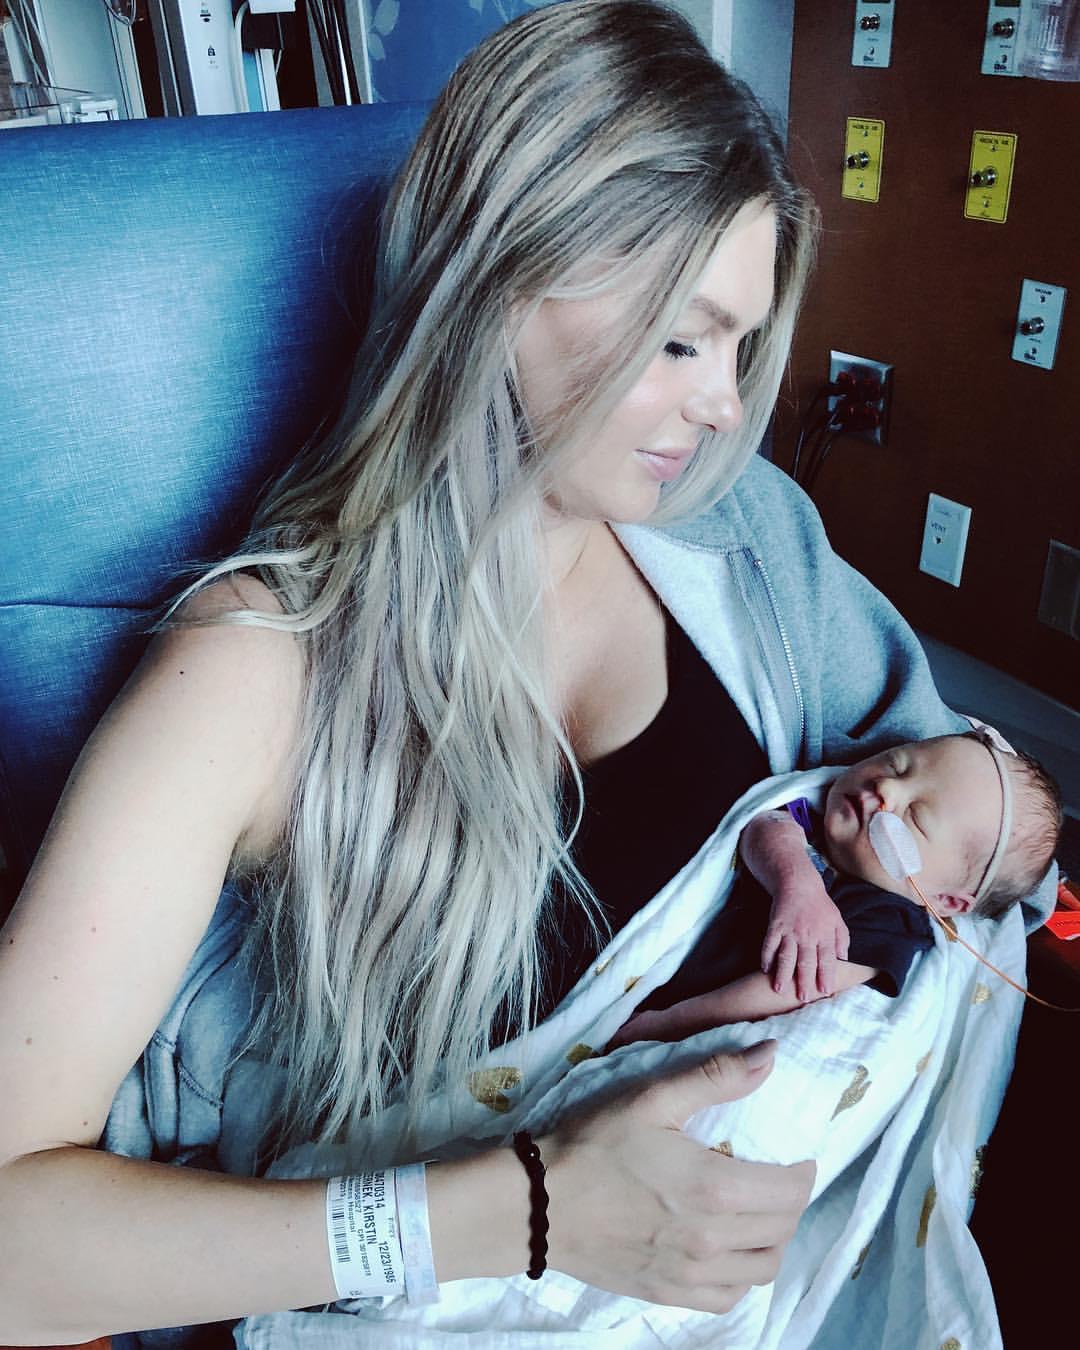 Kirstin with baby Aria. (Courtesy of <a href="https://www.instagram.com/kirstinczernek/">Kirstin Czernek</a>)